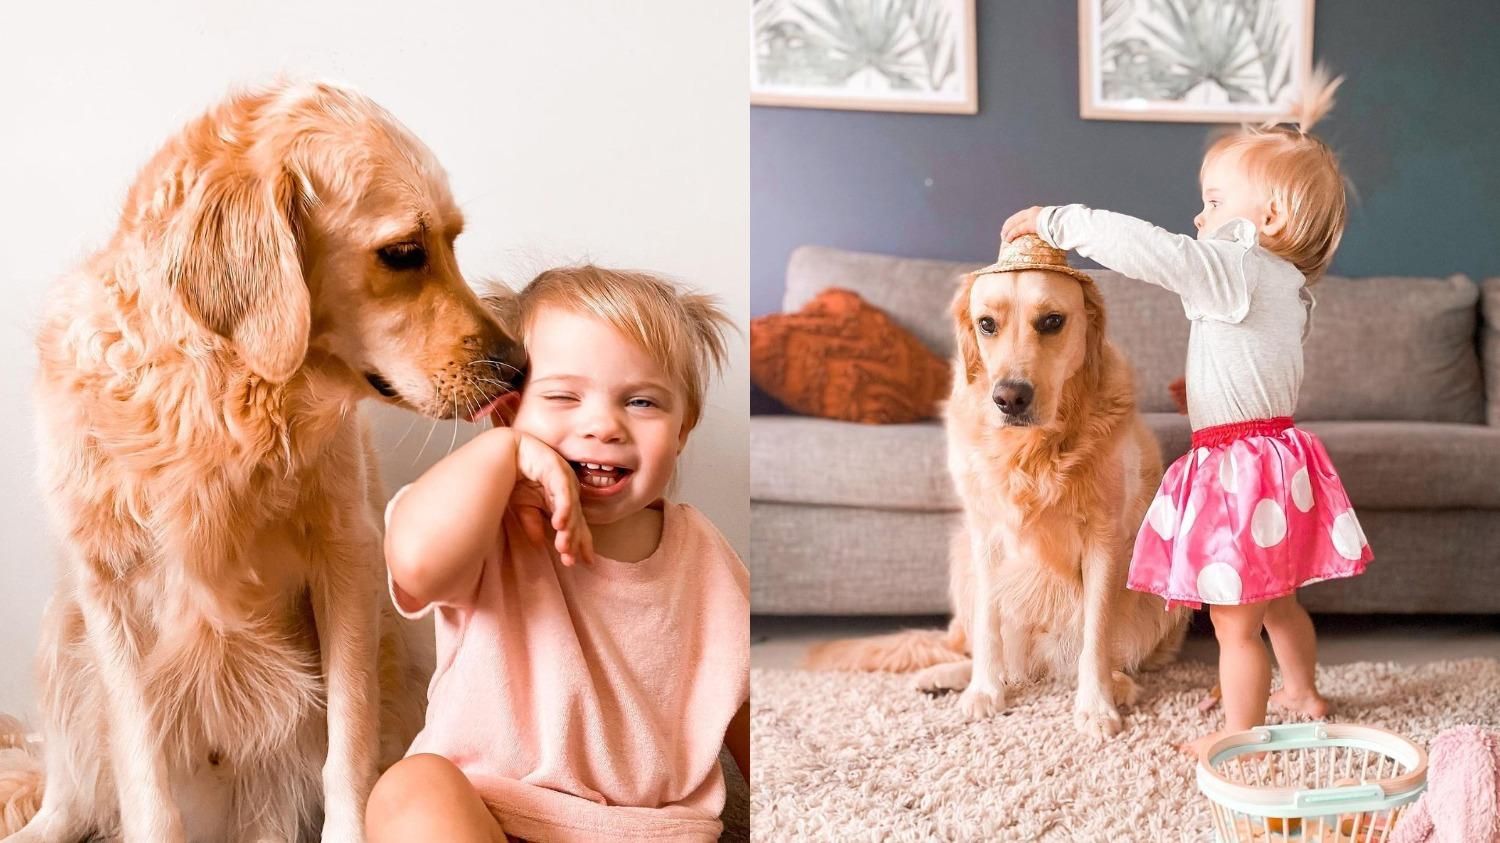 "Кращий старший брат": як величезний пес піклується про маленьку дівчинку - Pets